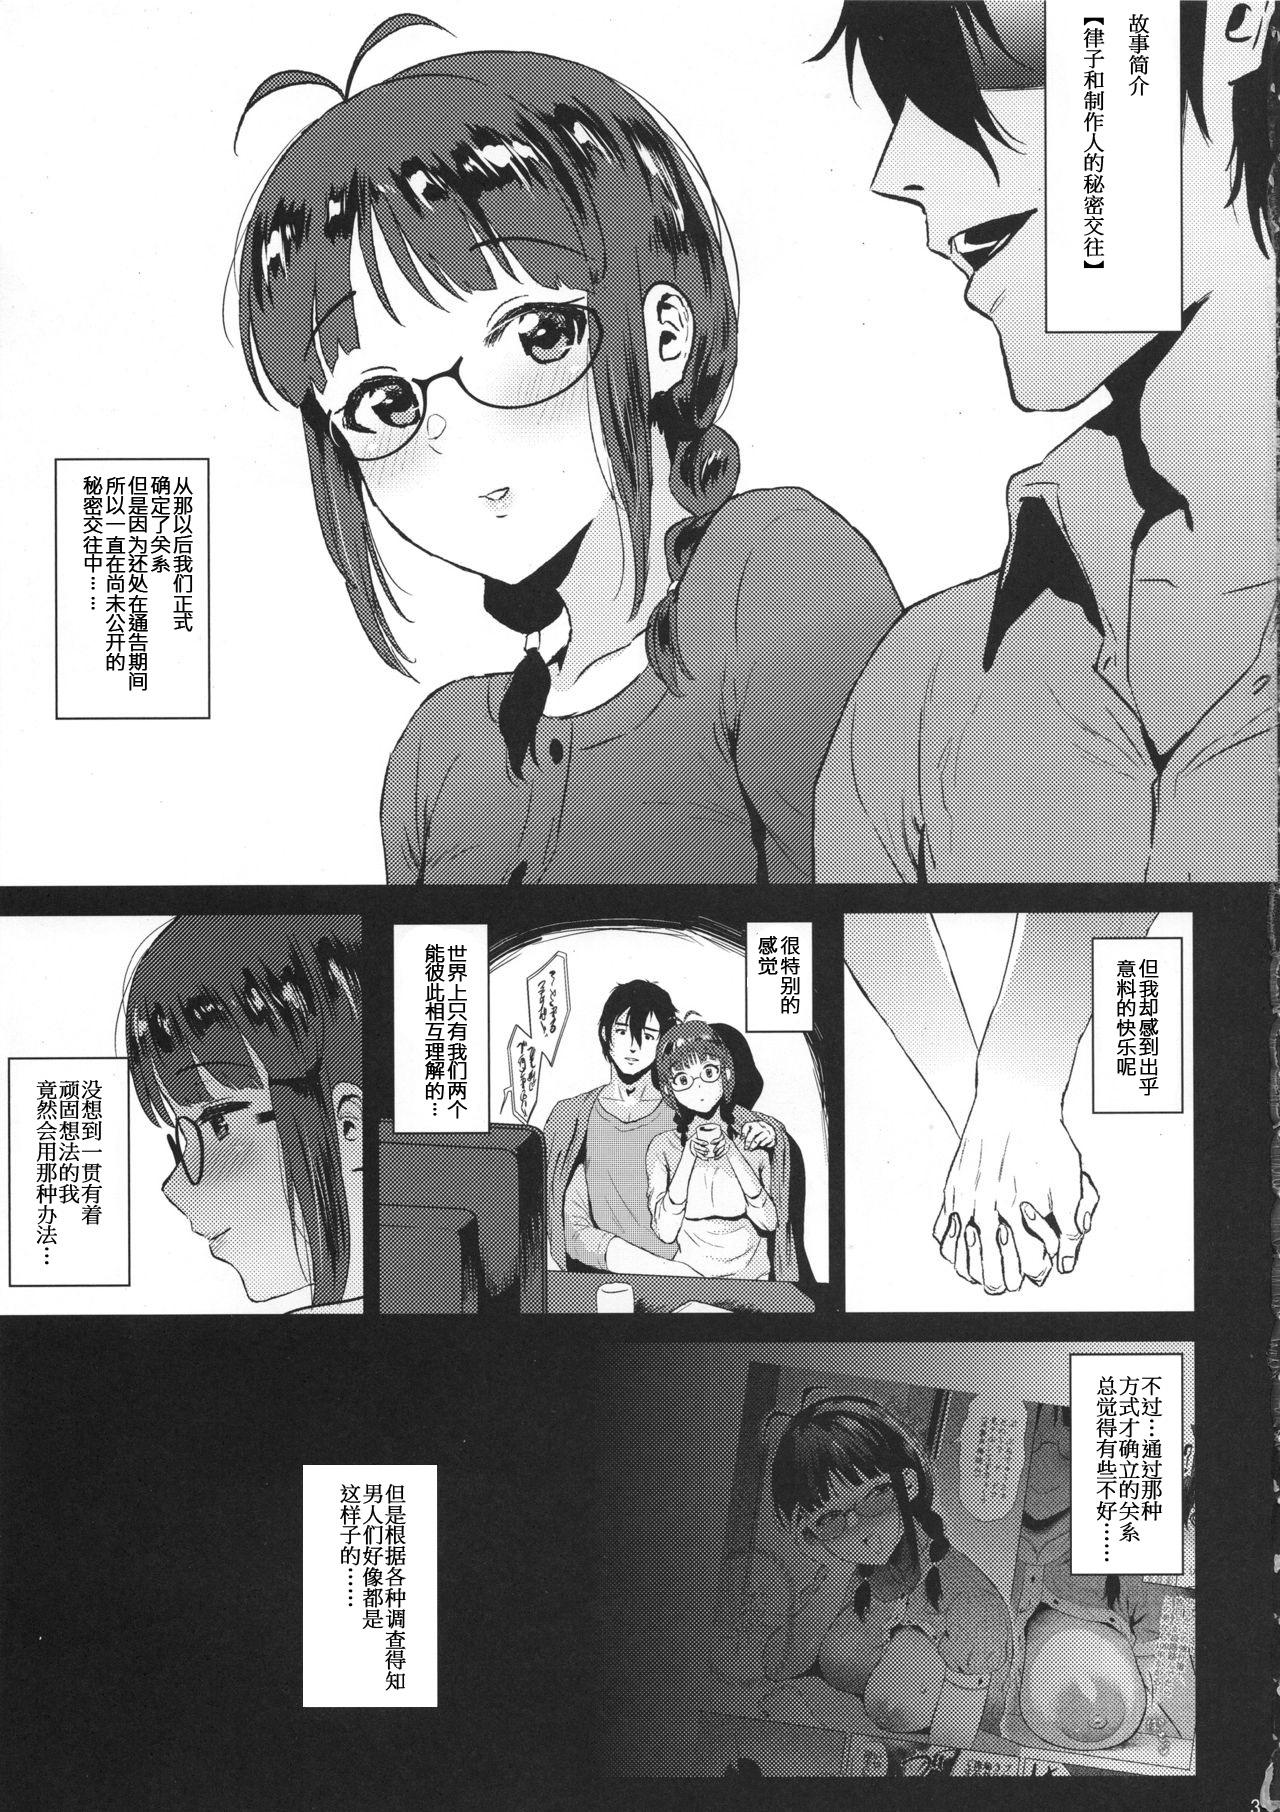 Petite Ritsuko wa Kozukuri ga Shitai after - The idolmaster Anus - Page 2